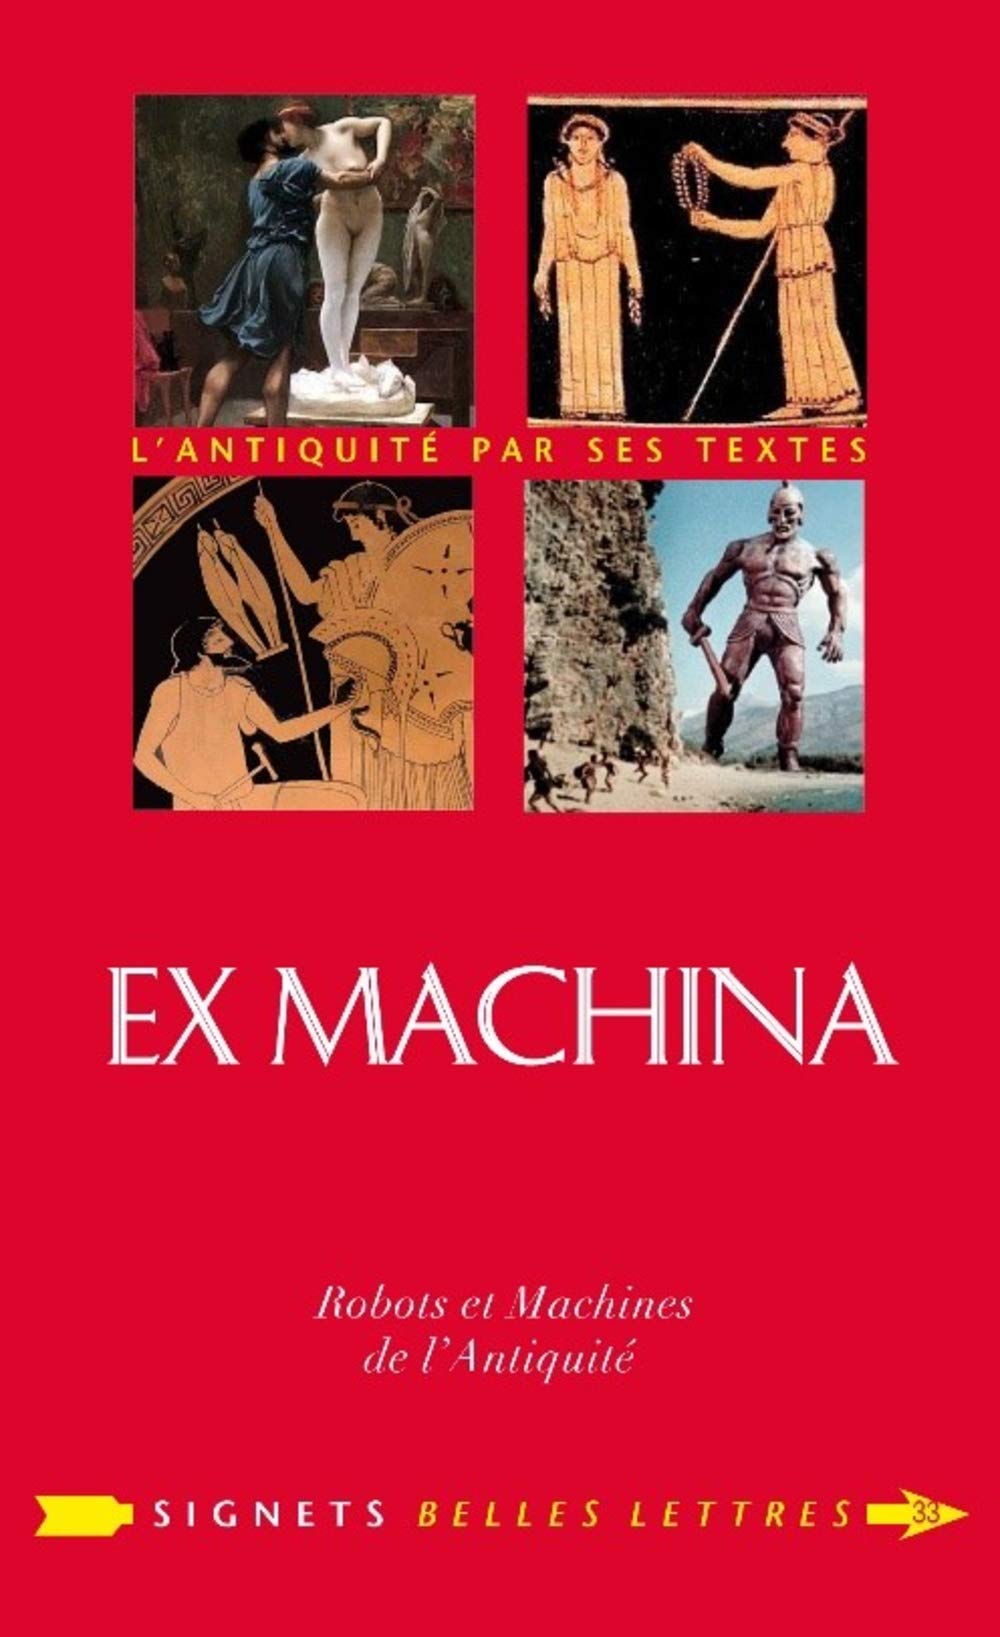 Ex Machina. Machines, automates et robots dans l'Antiquité, 2020, 342 p.